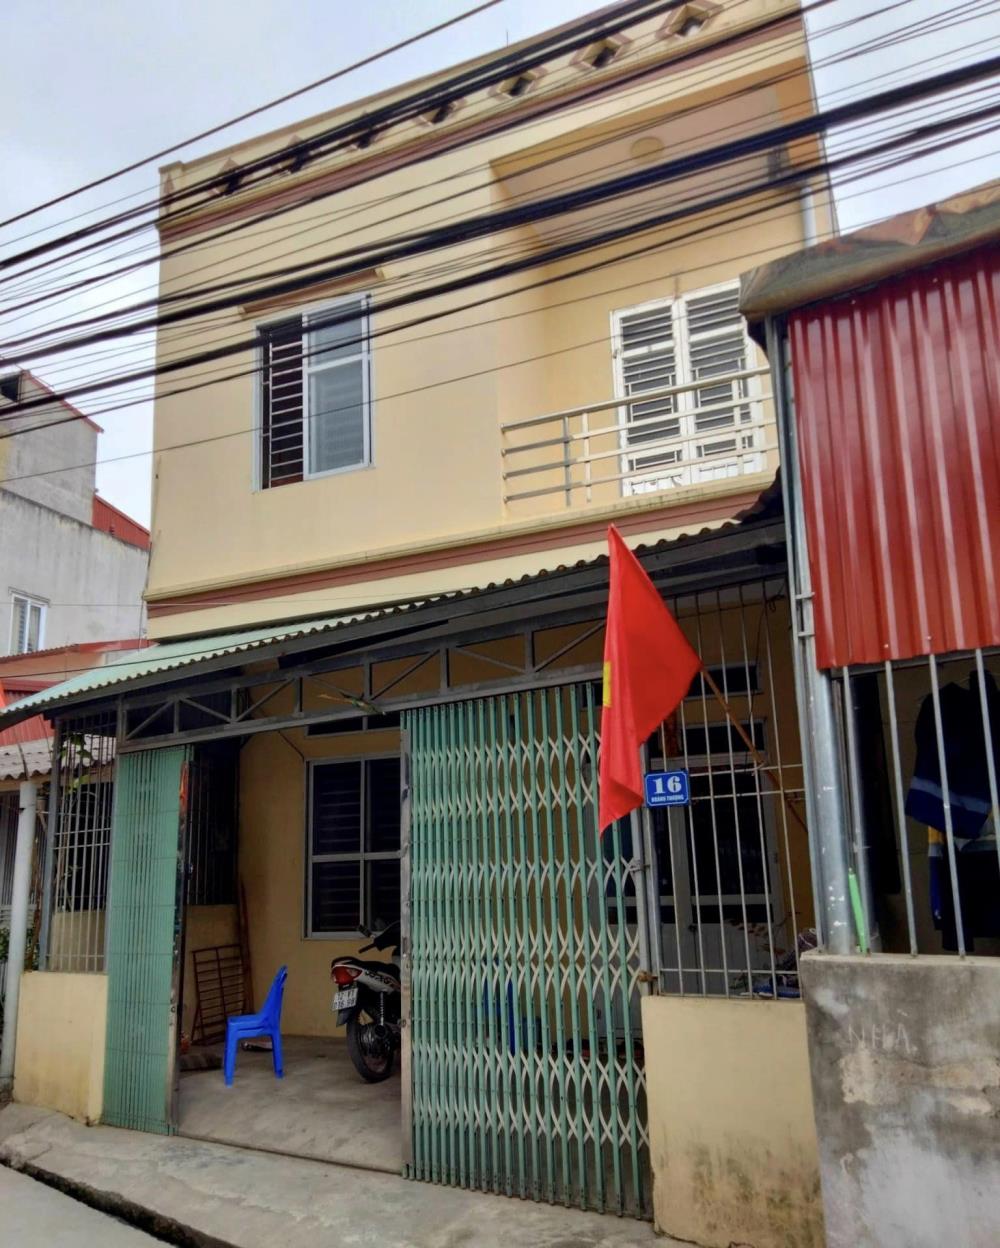 Chính chủ cần bán nhà Số 16 ngõ 2 đường Trần Đăng Ninh, thôn Hoàng Thượng, xã Hoàng Đồng, TP Lạng Sơn.135281